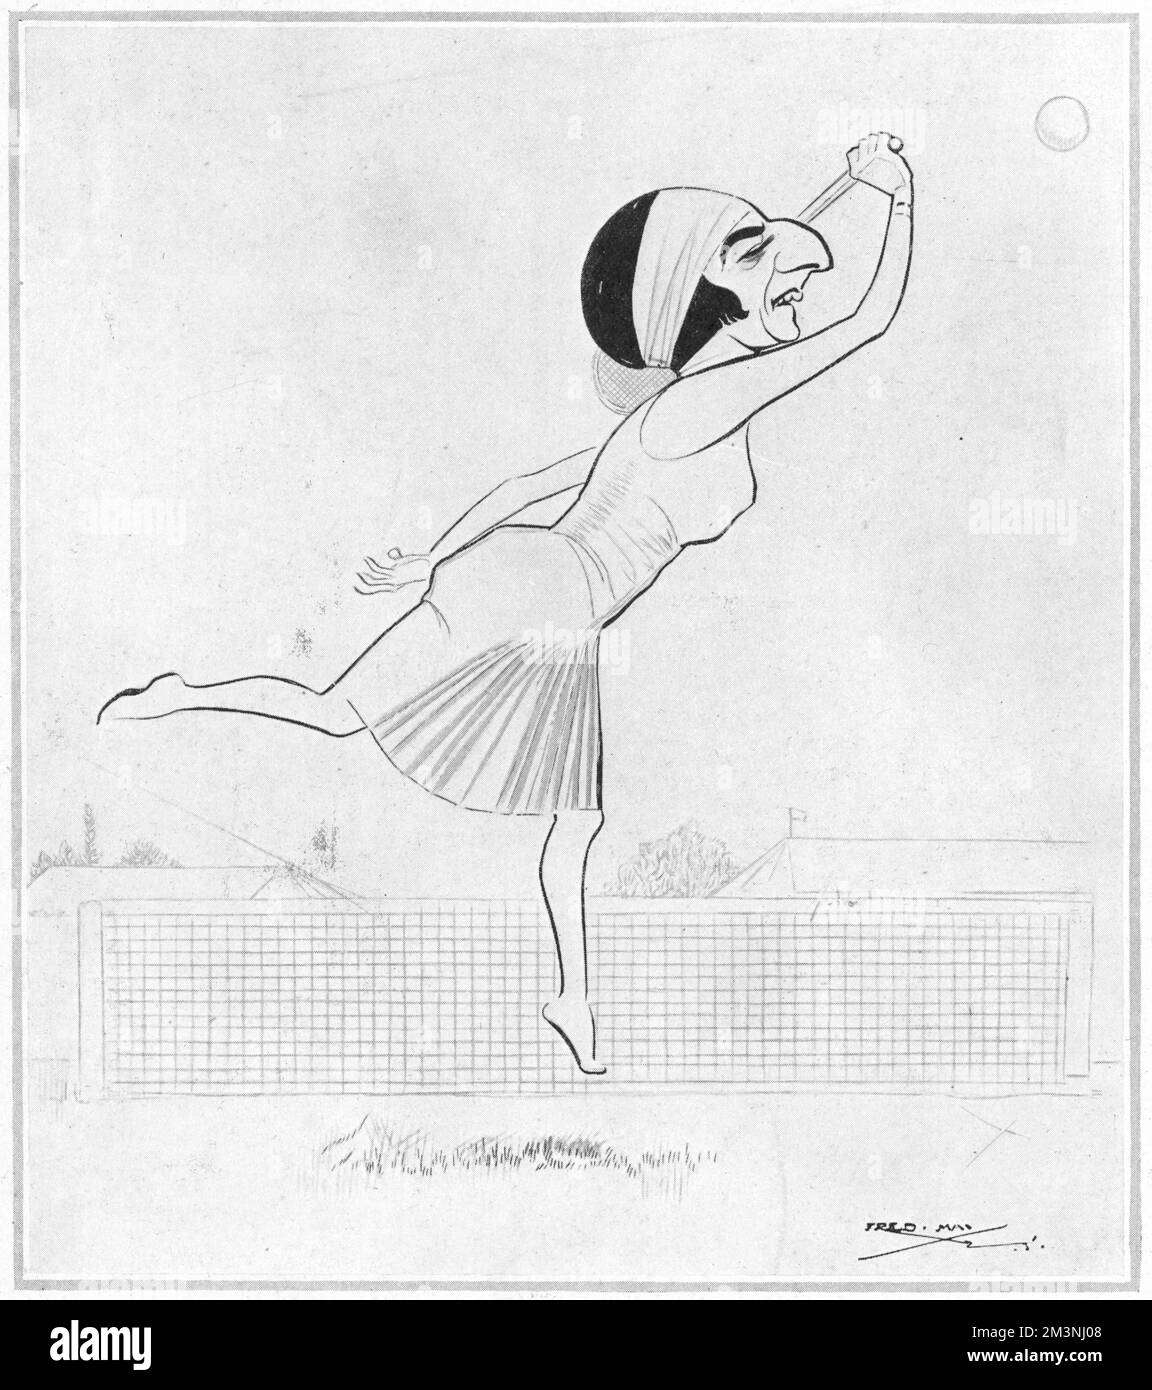 Suzanne Lenglen (1899-1938), joueuse et championne de tennis française, gagnante de 81 titres simples, 73 doubles et 11 doubles mixtes capturés par le caricaturiste Fred May portant son bandeau caractéristique et jouant un coup de balle. Date: 1925 Banque D'Images